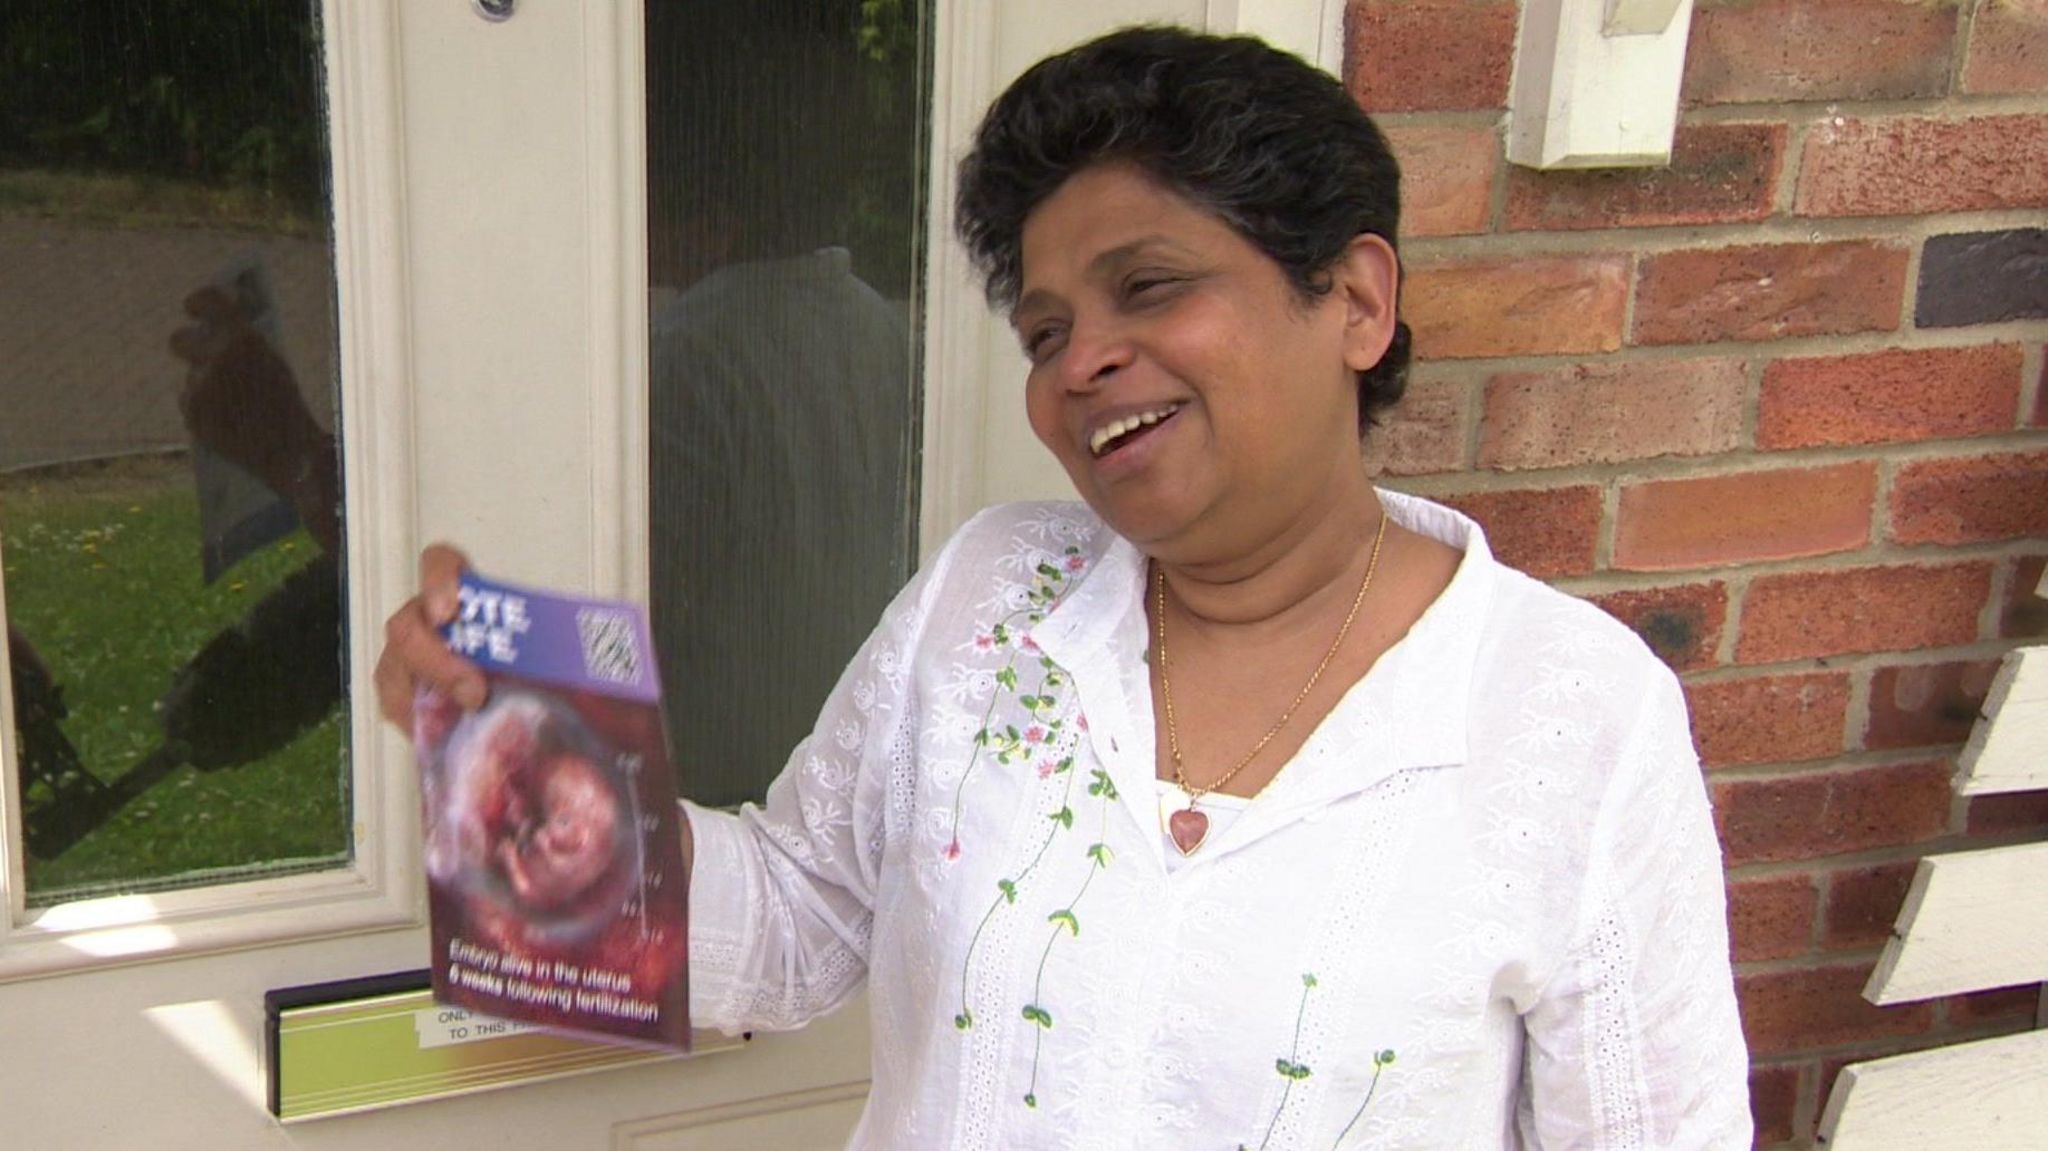 Priyanka holding an anti-abortion leaflet in Kingswood, Hull